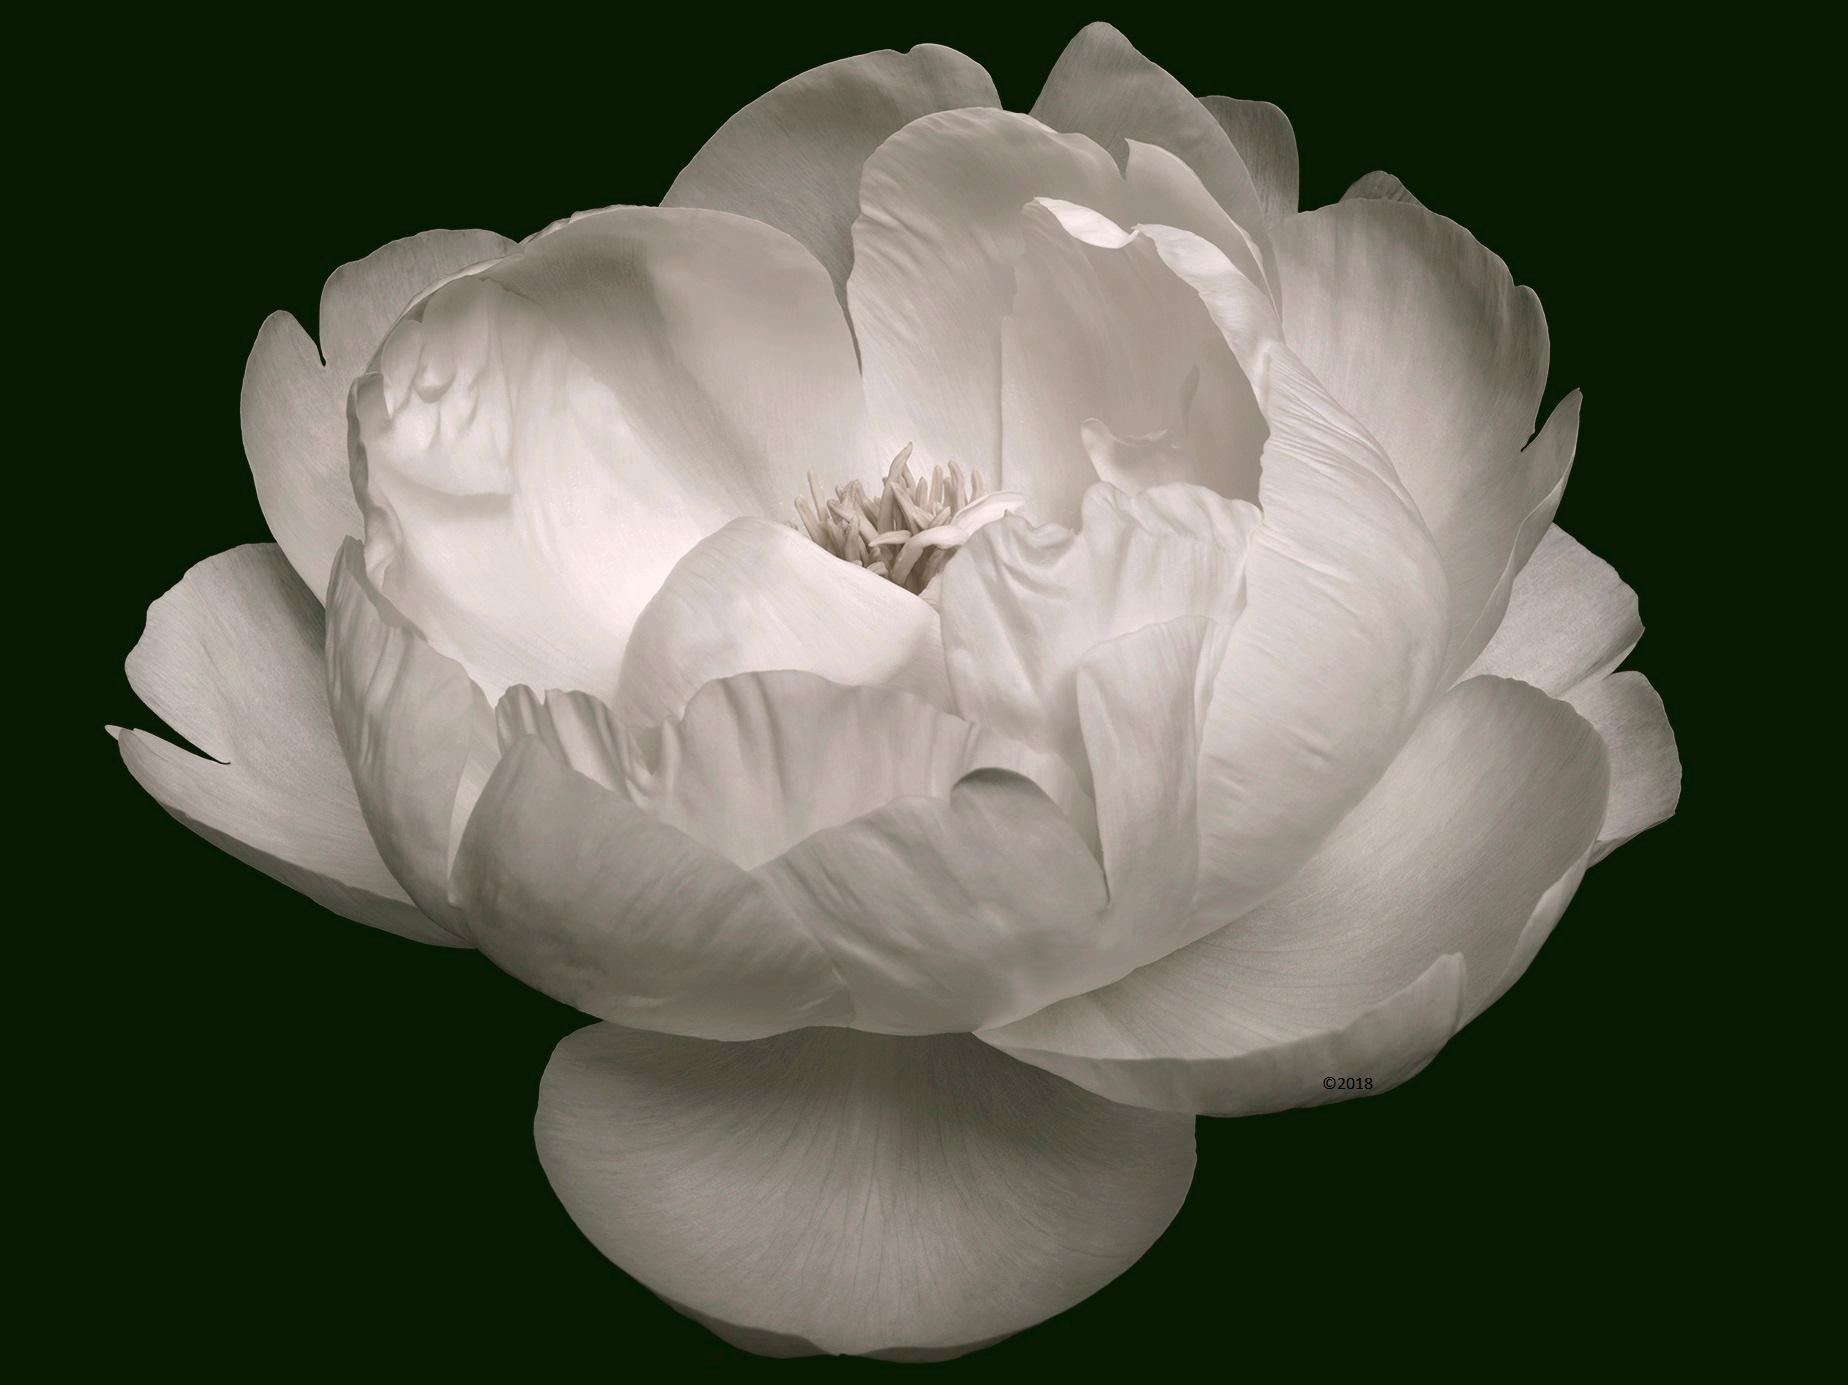 La beauté zen - Nature morte florale contemporaine - Série de photographies de fleurs - Lotus - Noir Figurative Photograph par MAE Curates